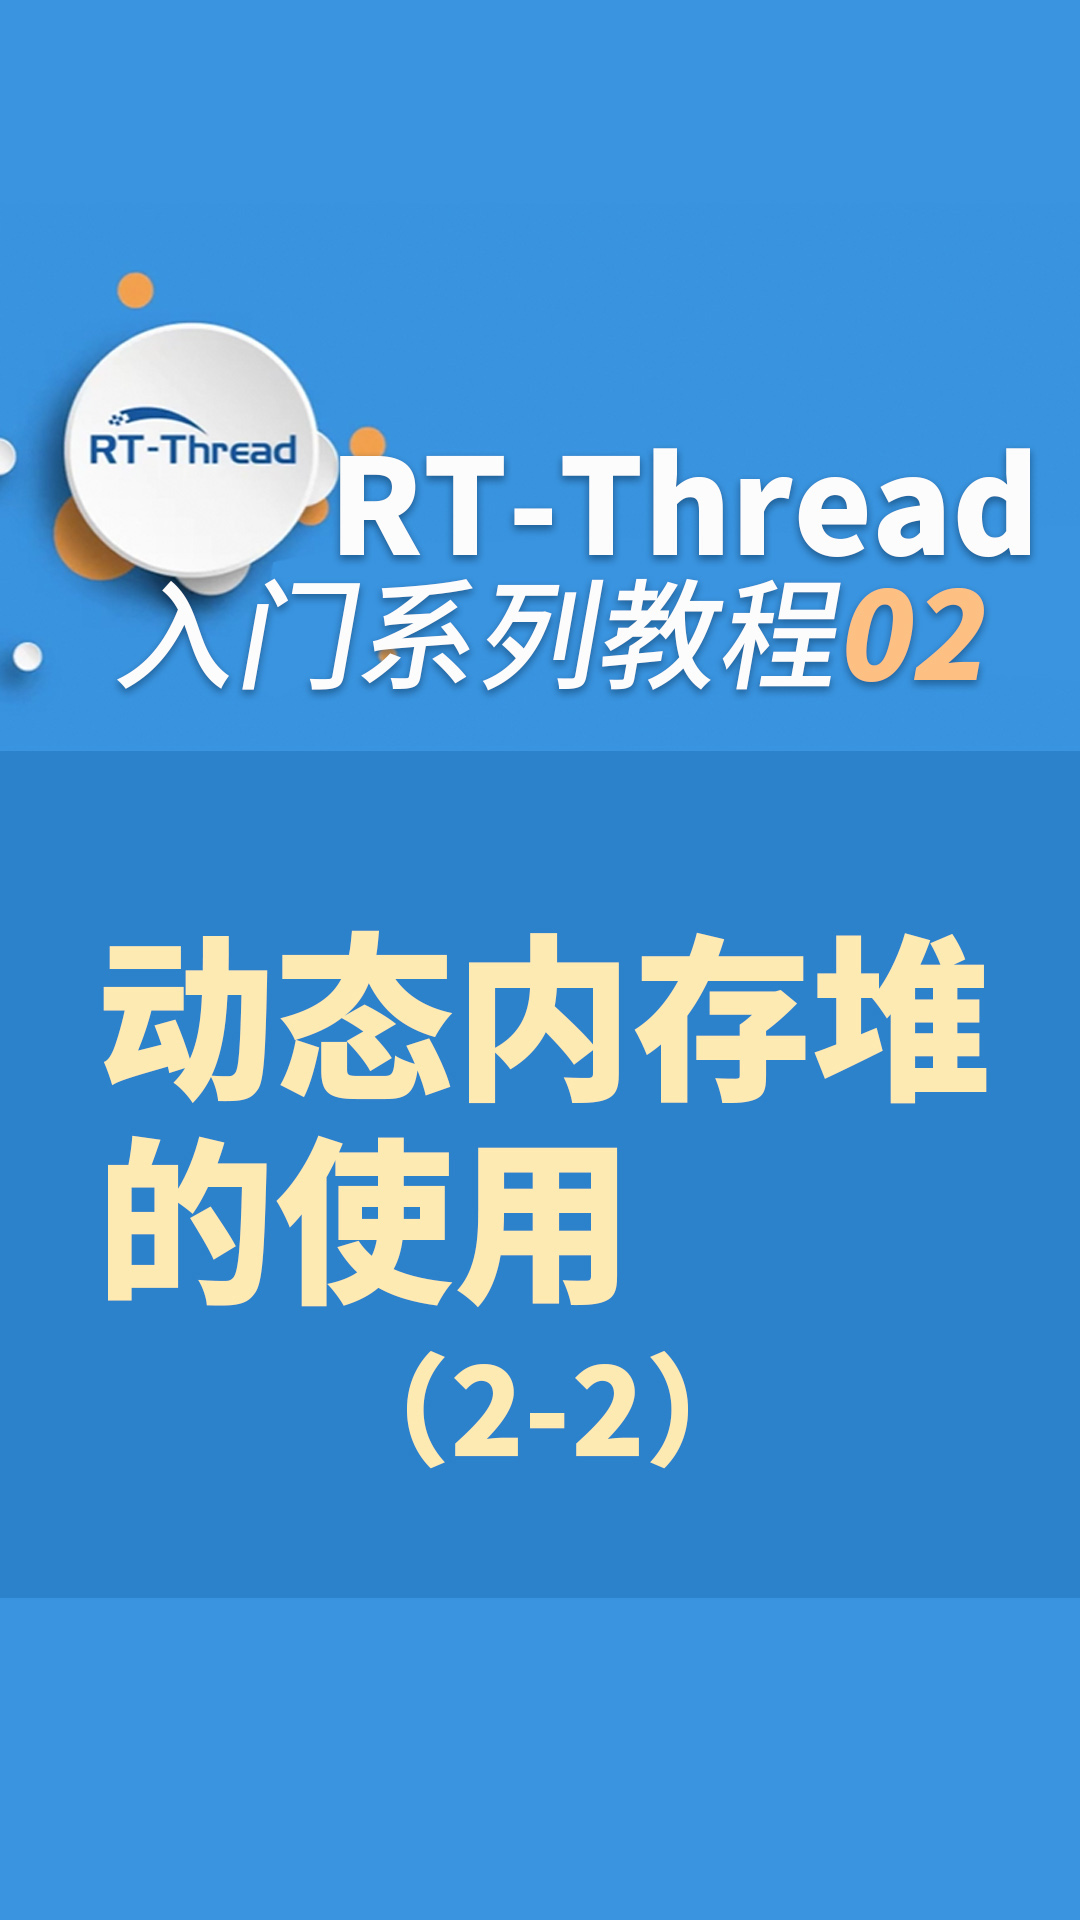 RT-Thread内核入门指南 - 2-2-动态内存堆的使用2-2#嵌入式开发 